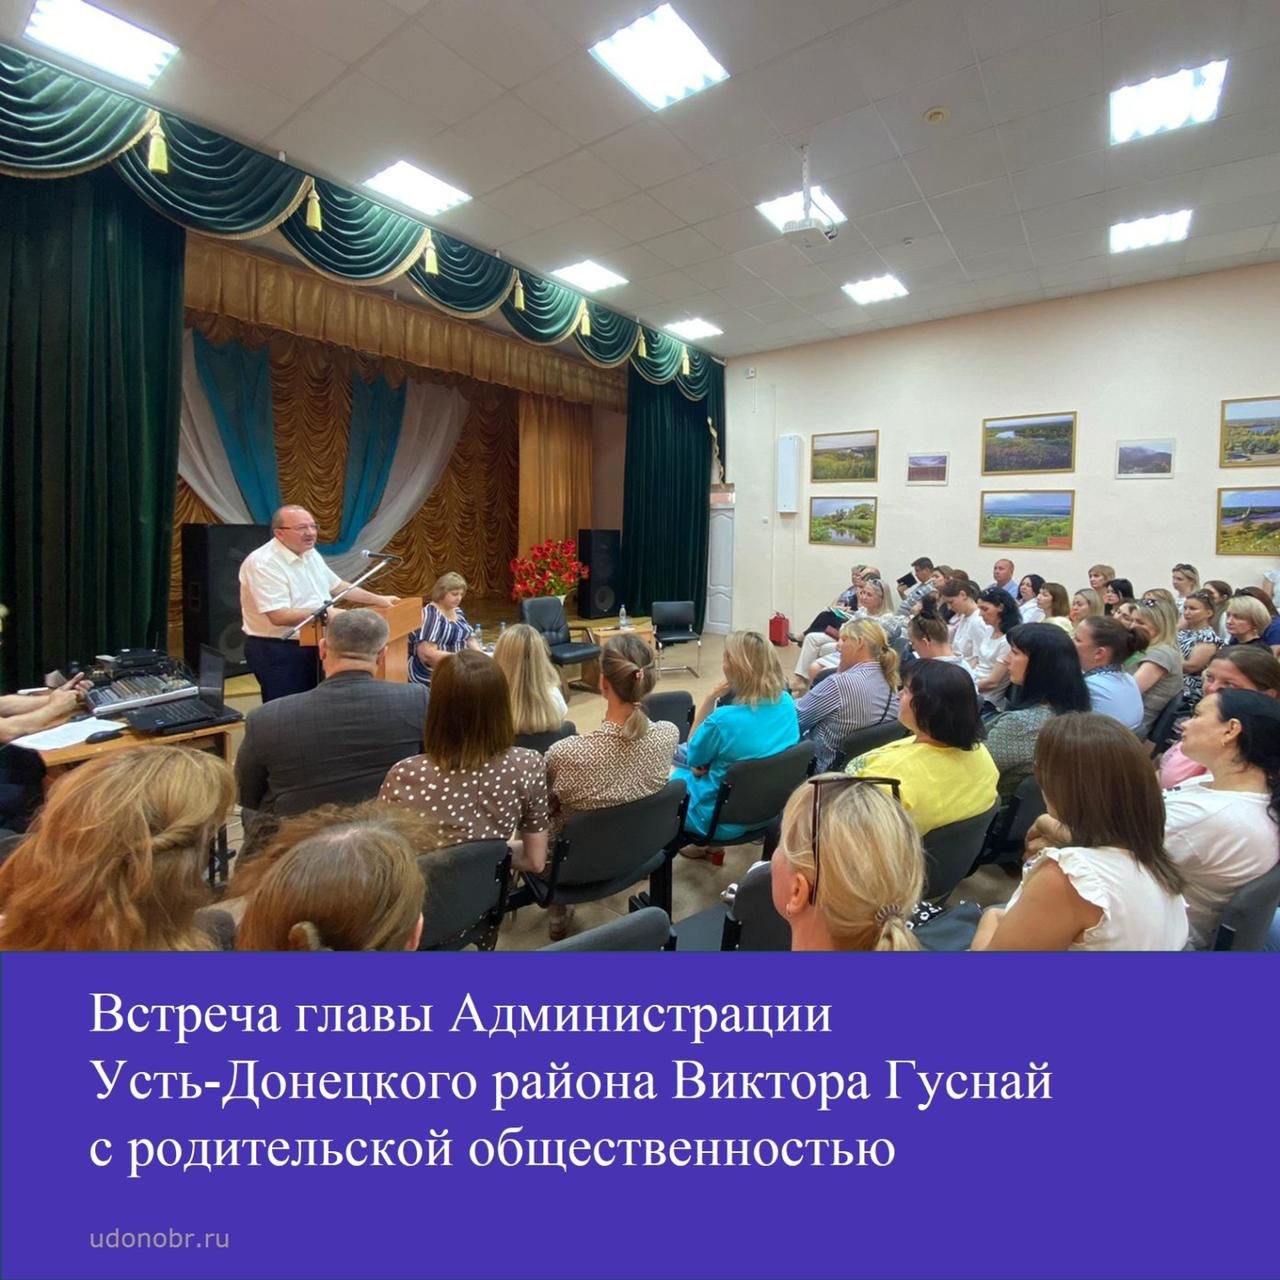 Встреча главы Администрации Усть-Донецкого района Виктора Гуснай с родительской общественностью